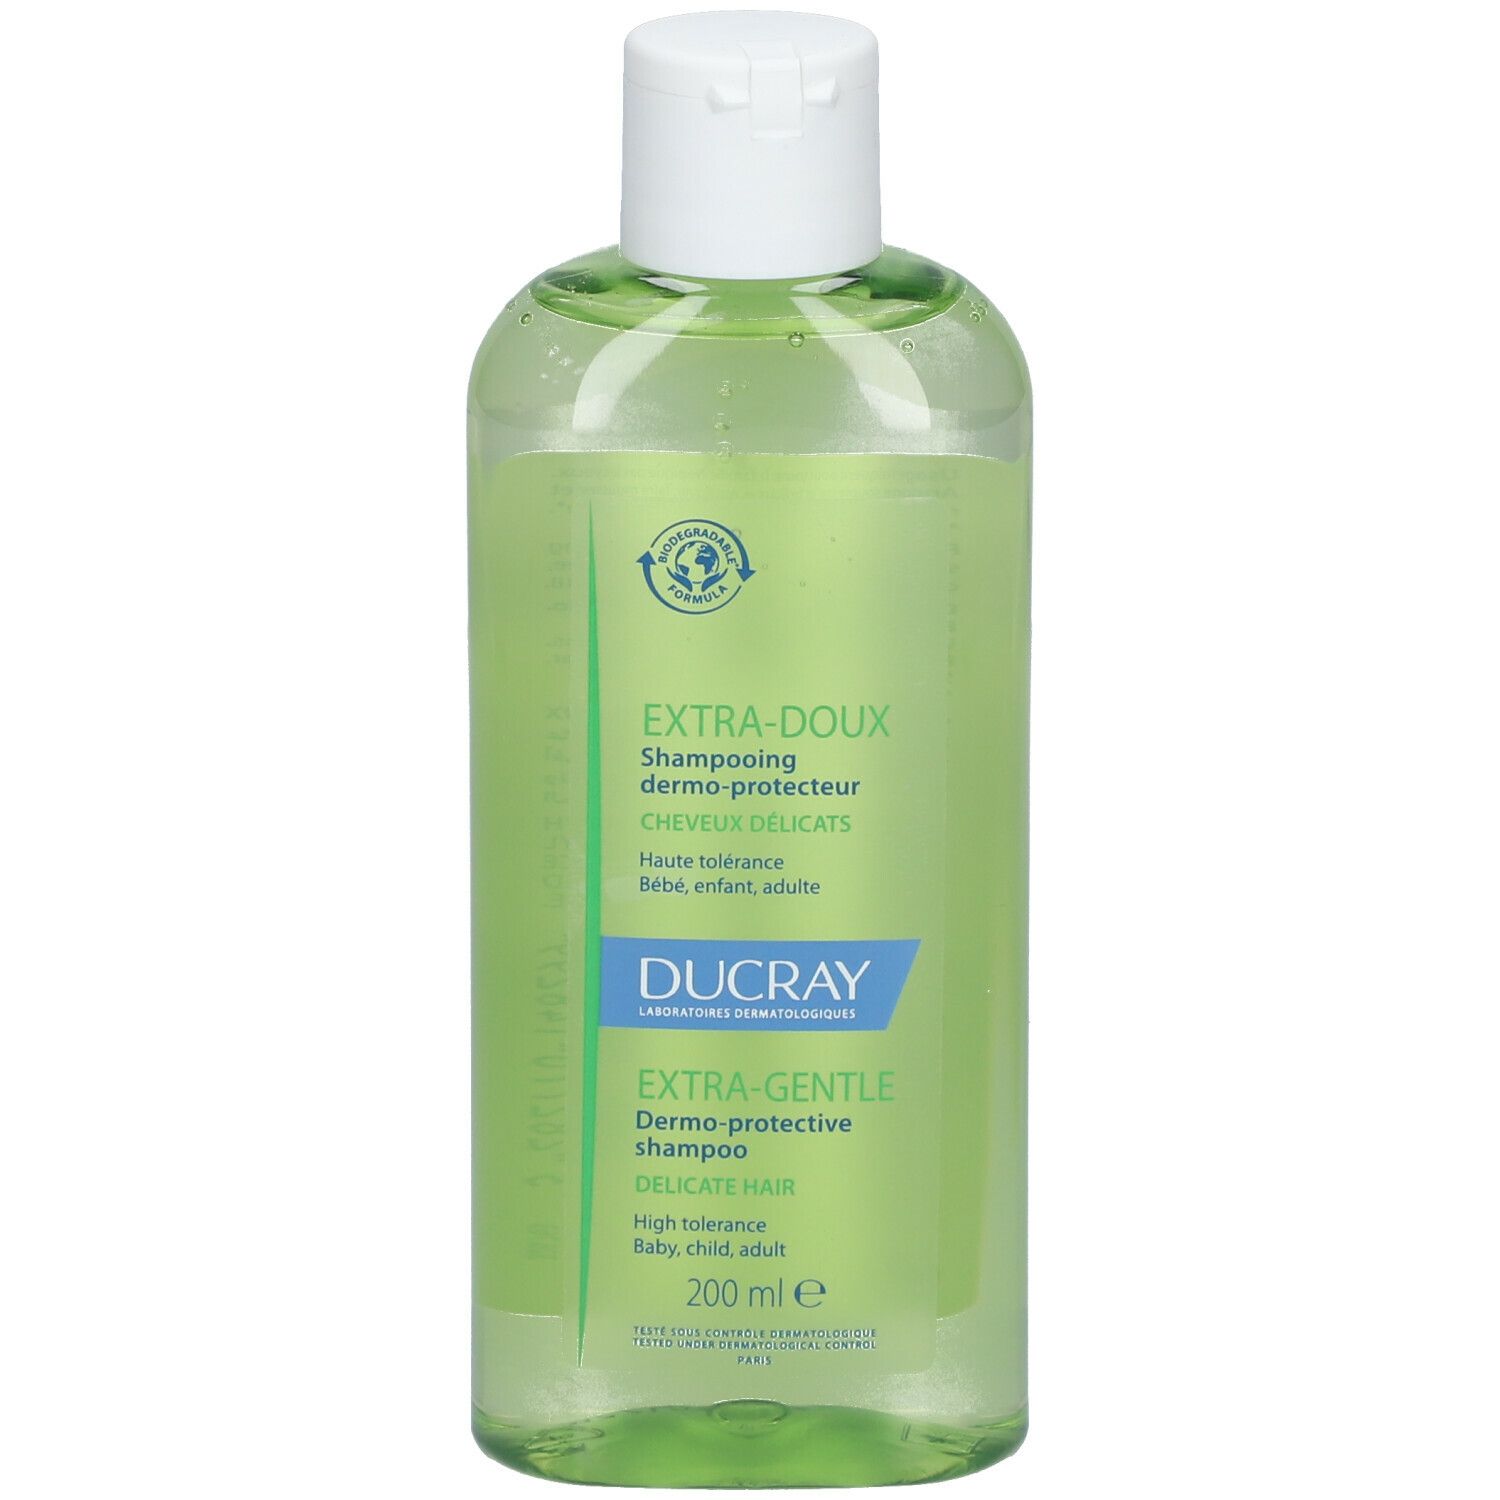 Ducray Extra-Doux Shampooing dermo-protecteur